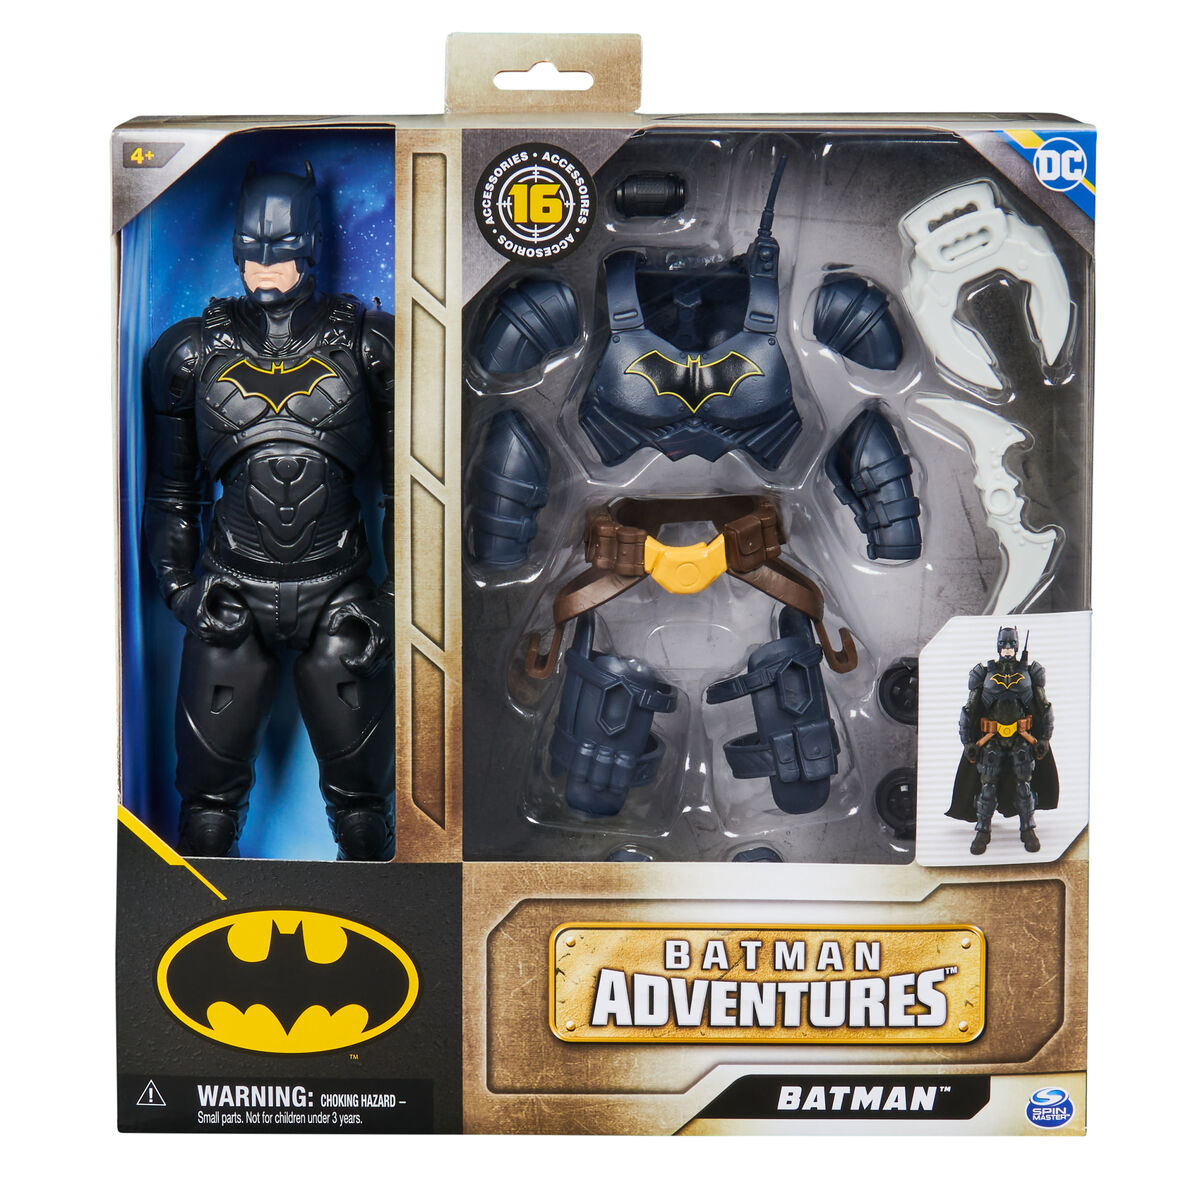 Batman action figures 6067399 –